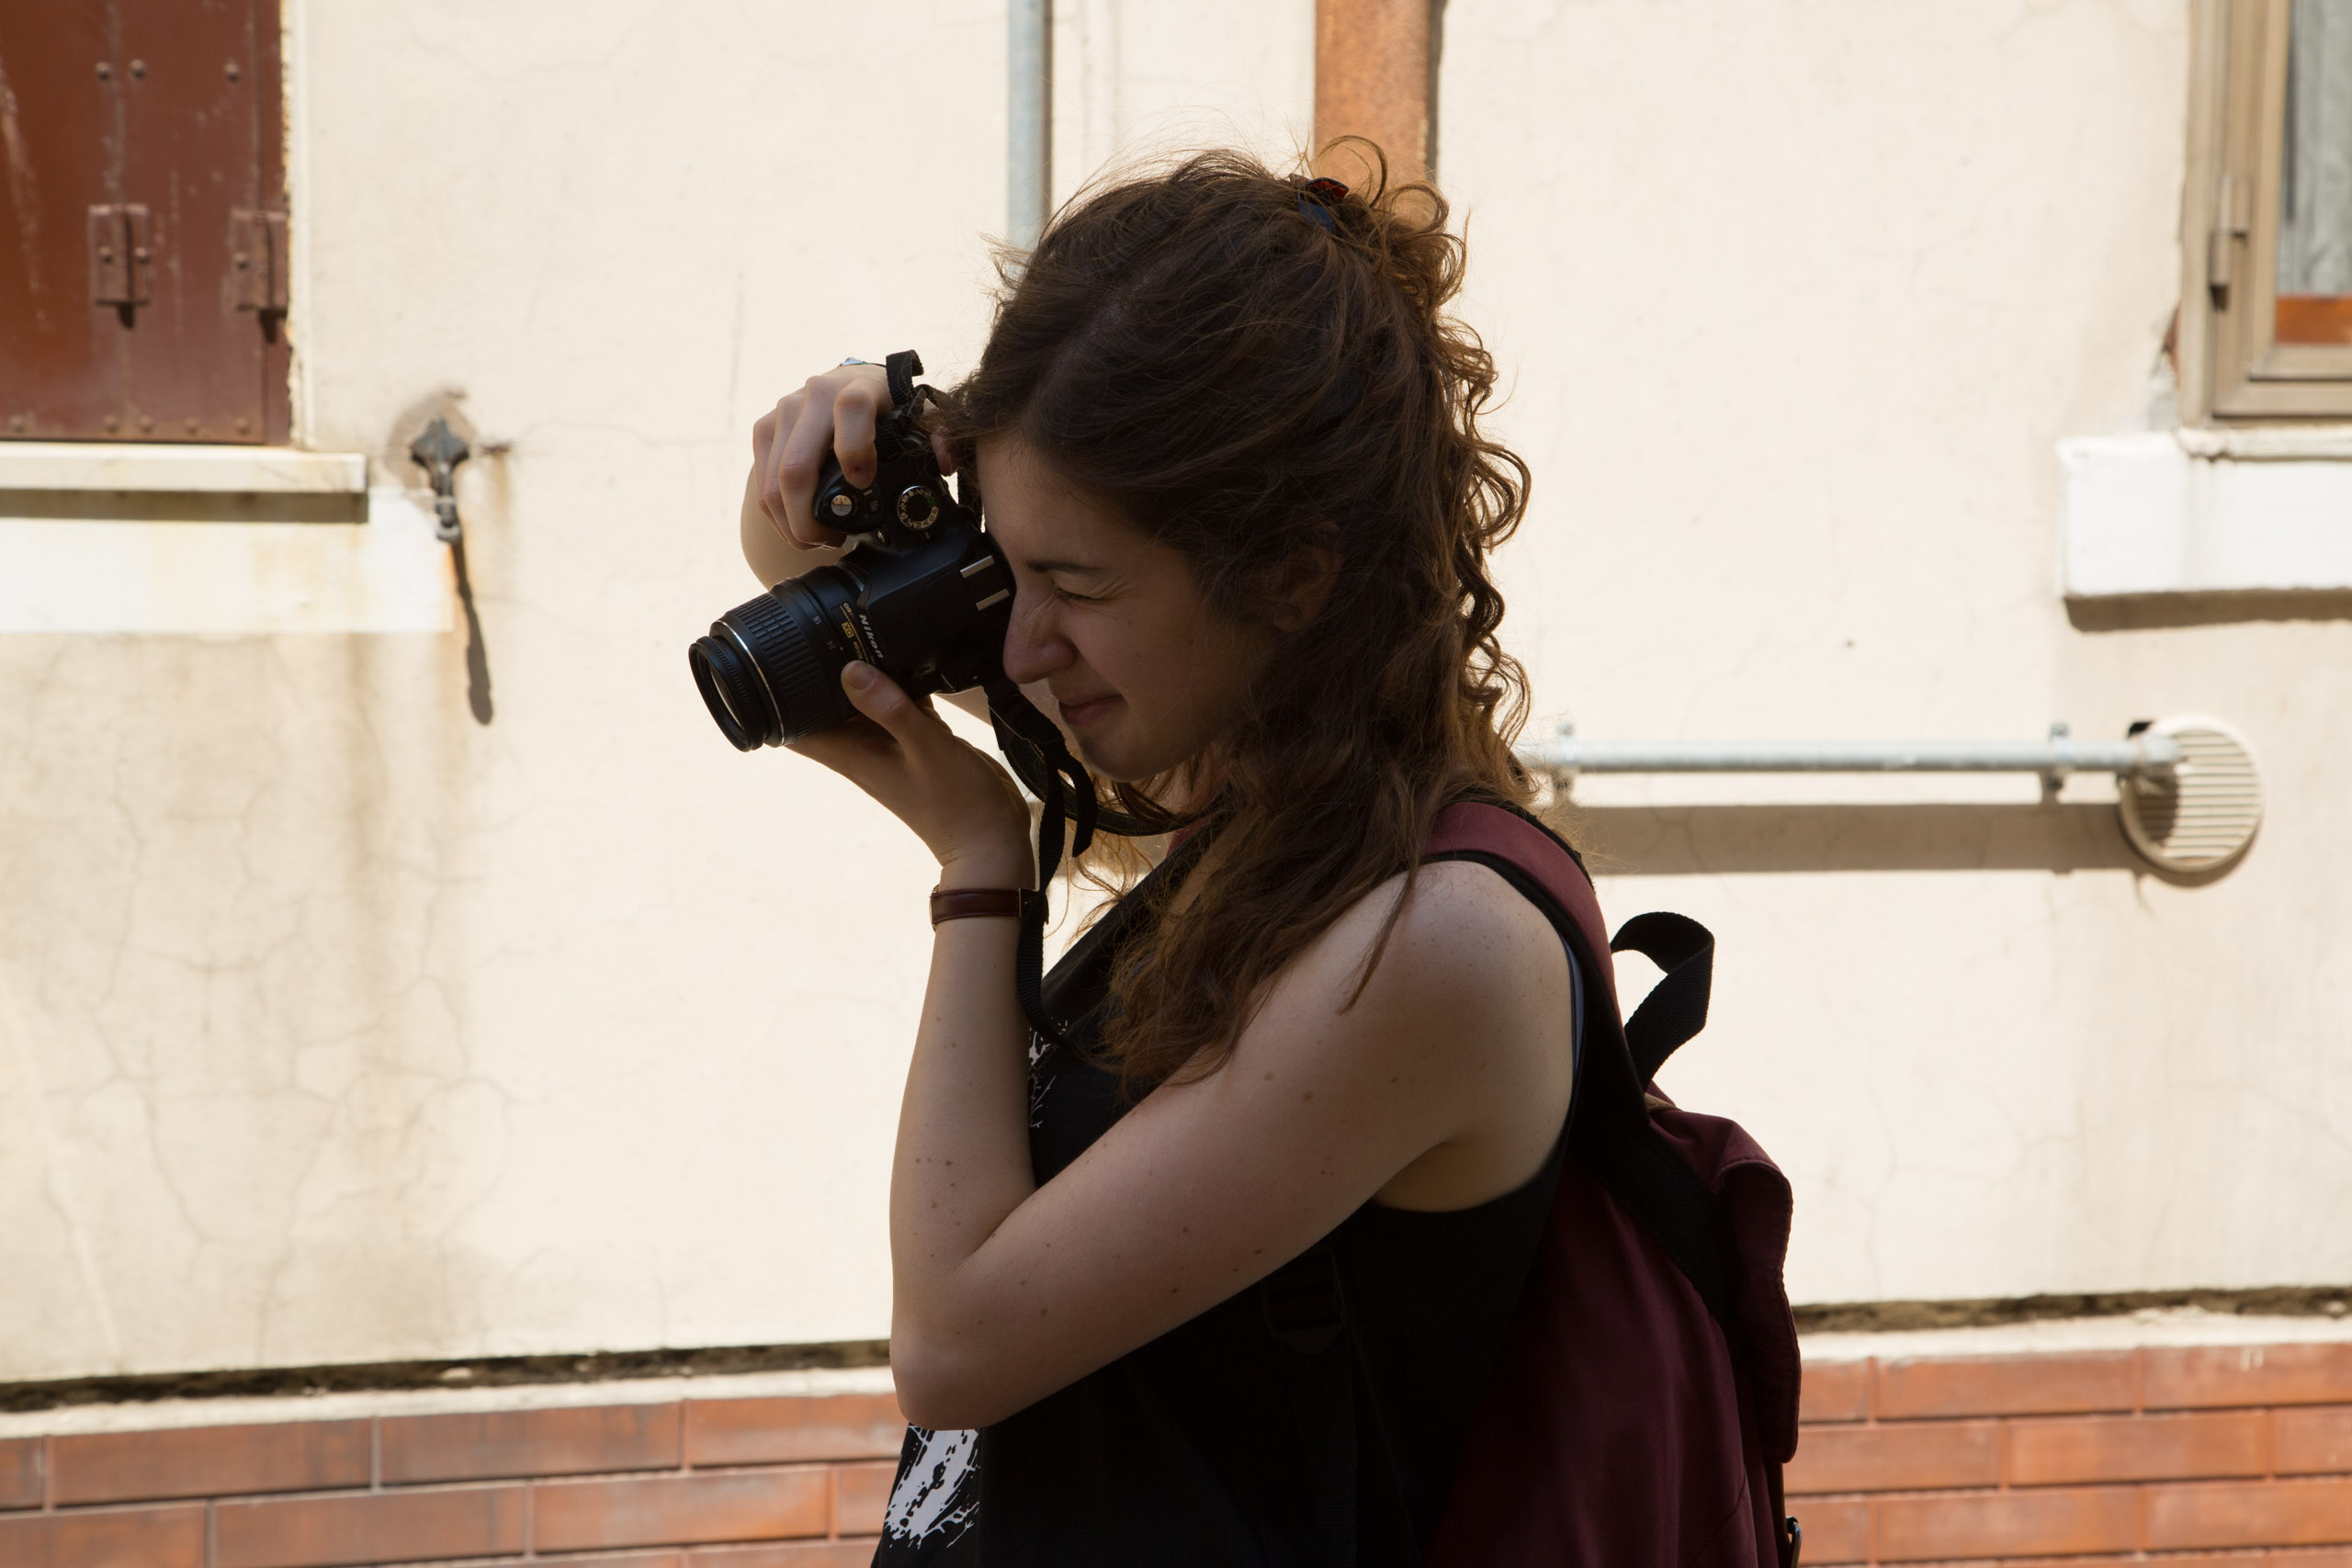 corso individuale fotografia a venezia